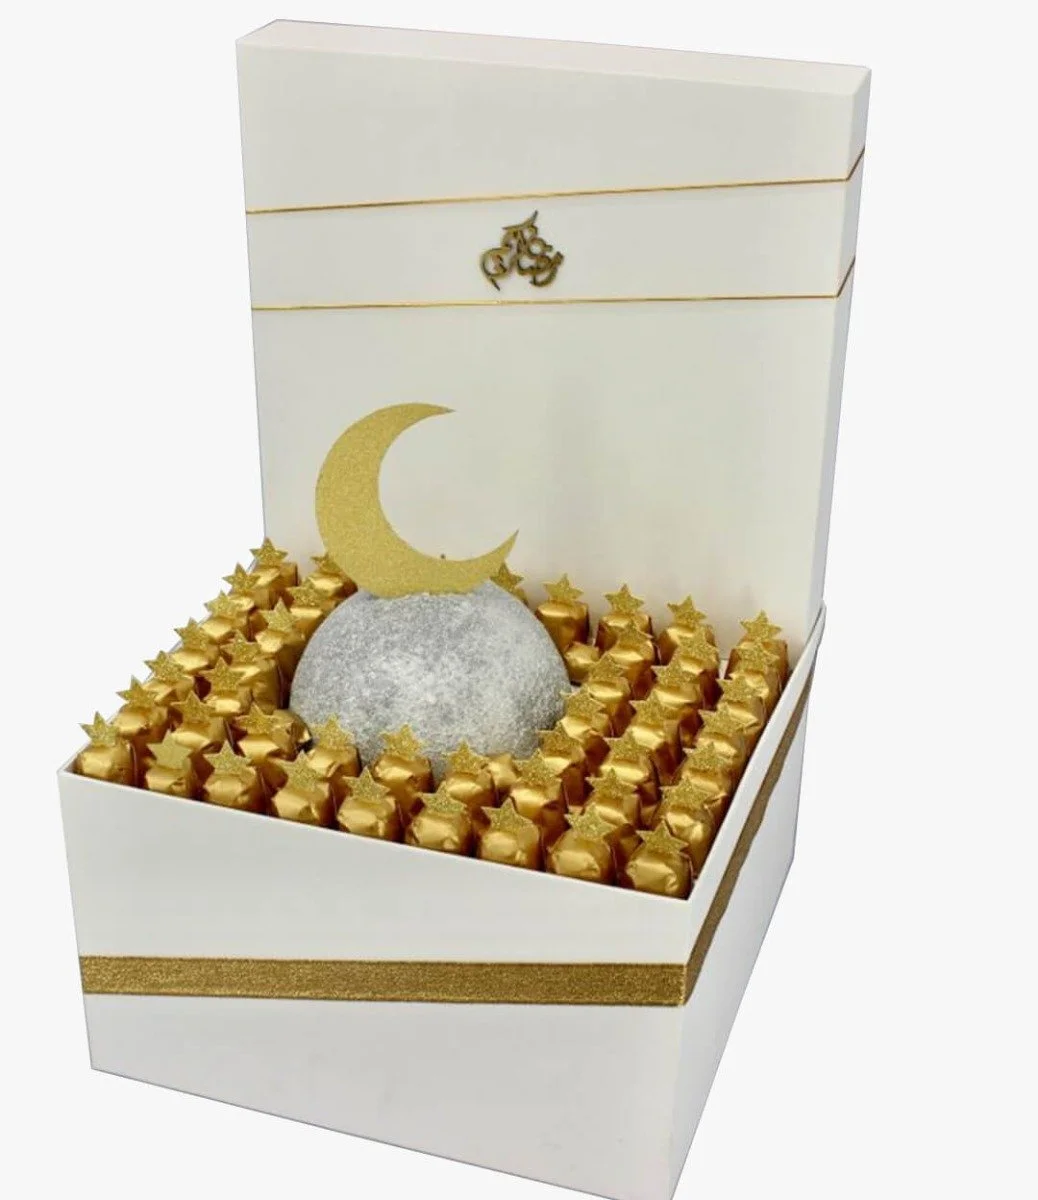 سلة تمور رمضان الفاخرة بالشوكولاتة XL من لو شوكوليتير دبي